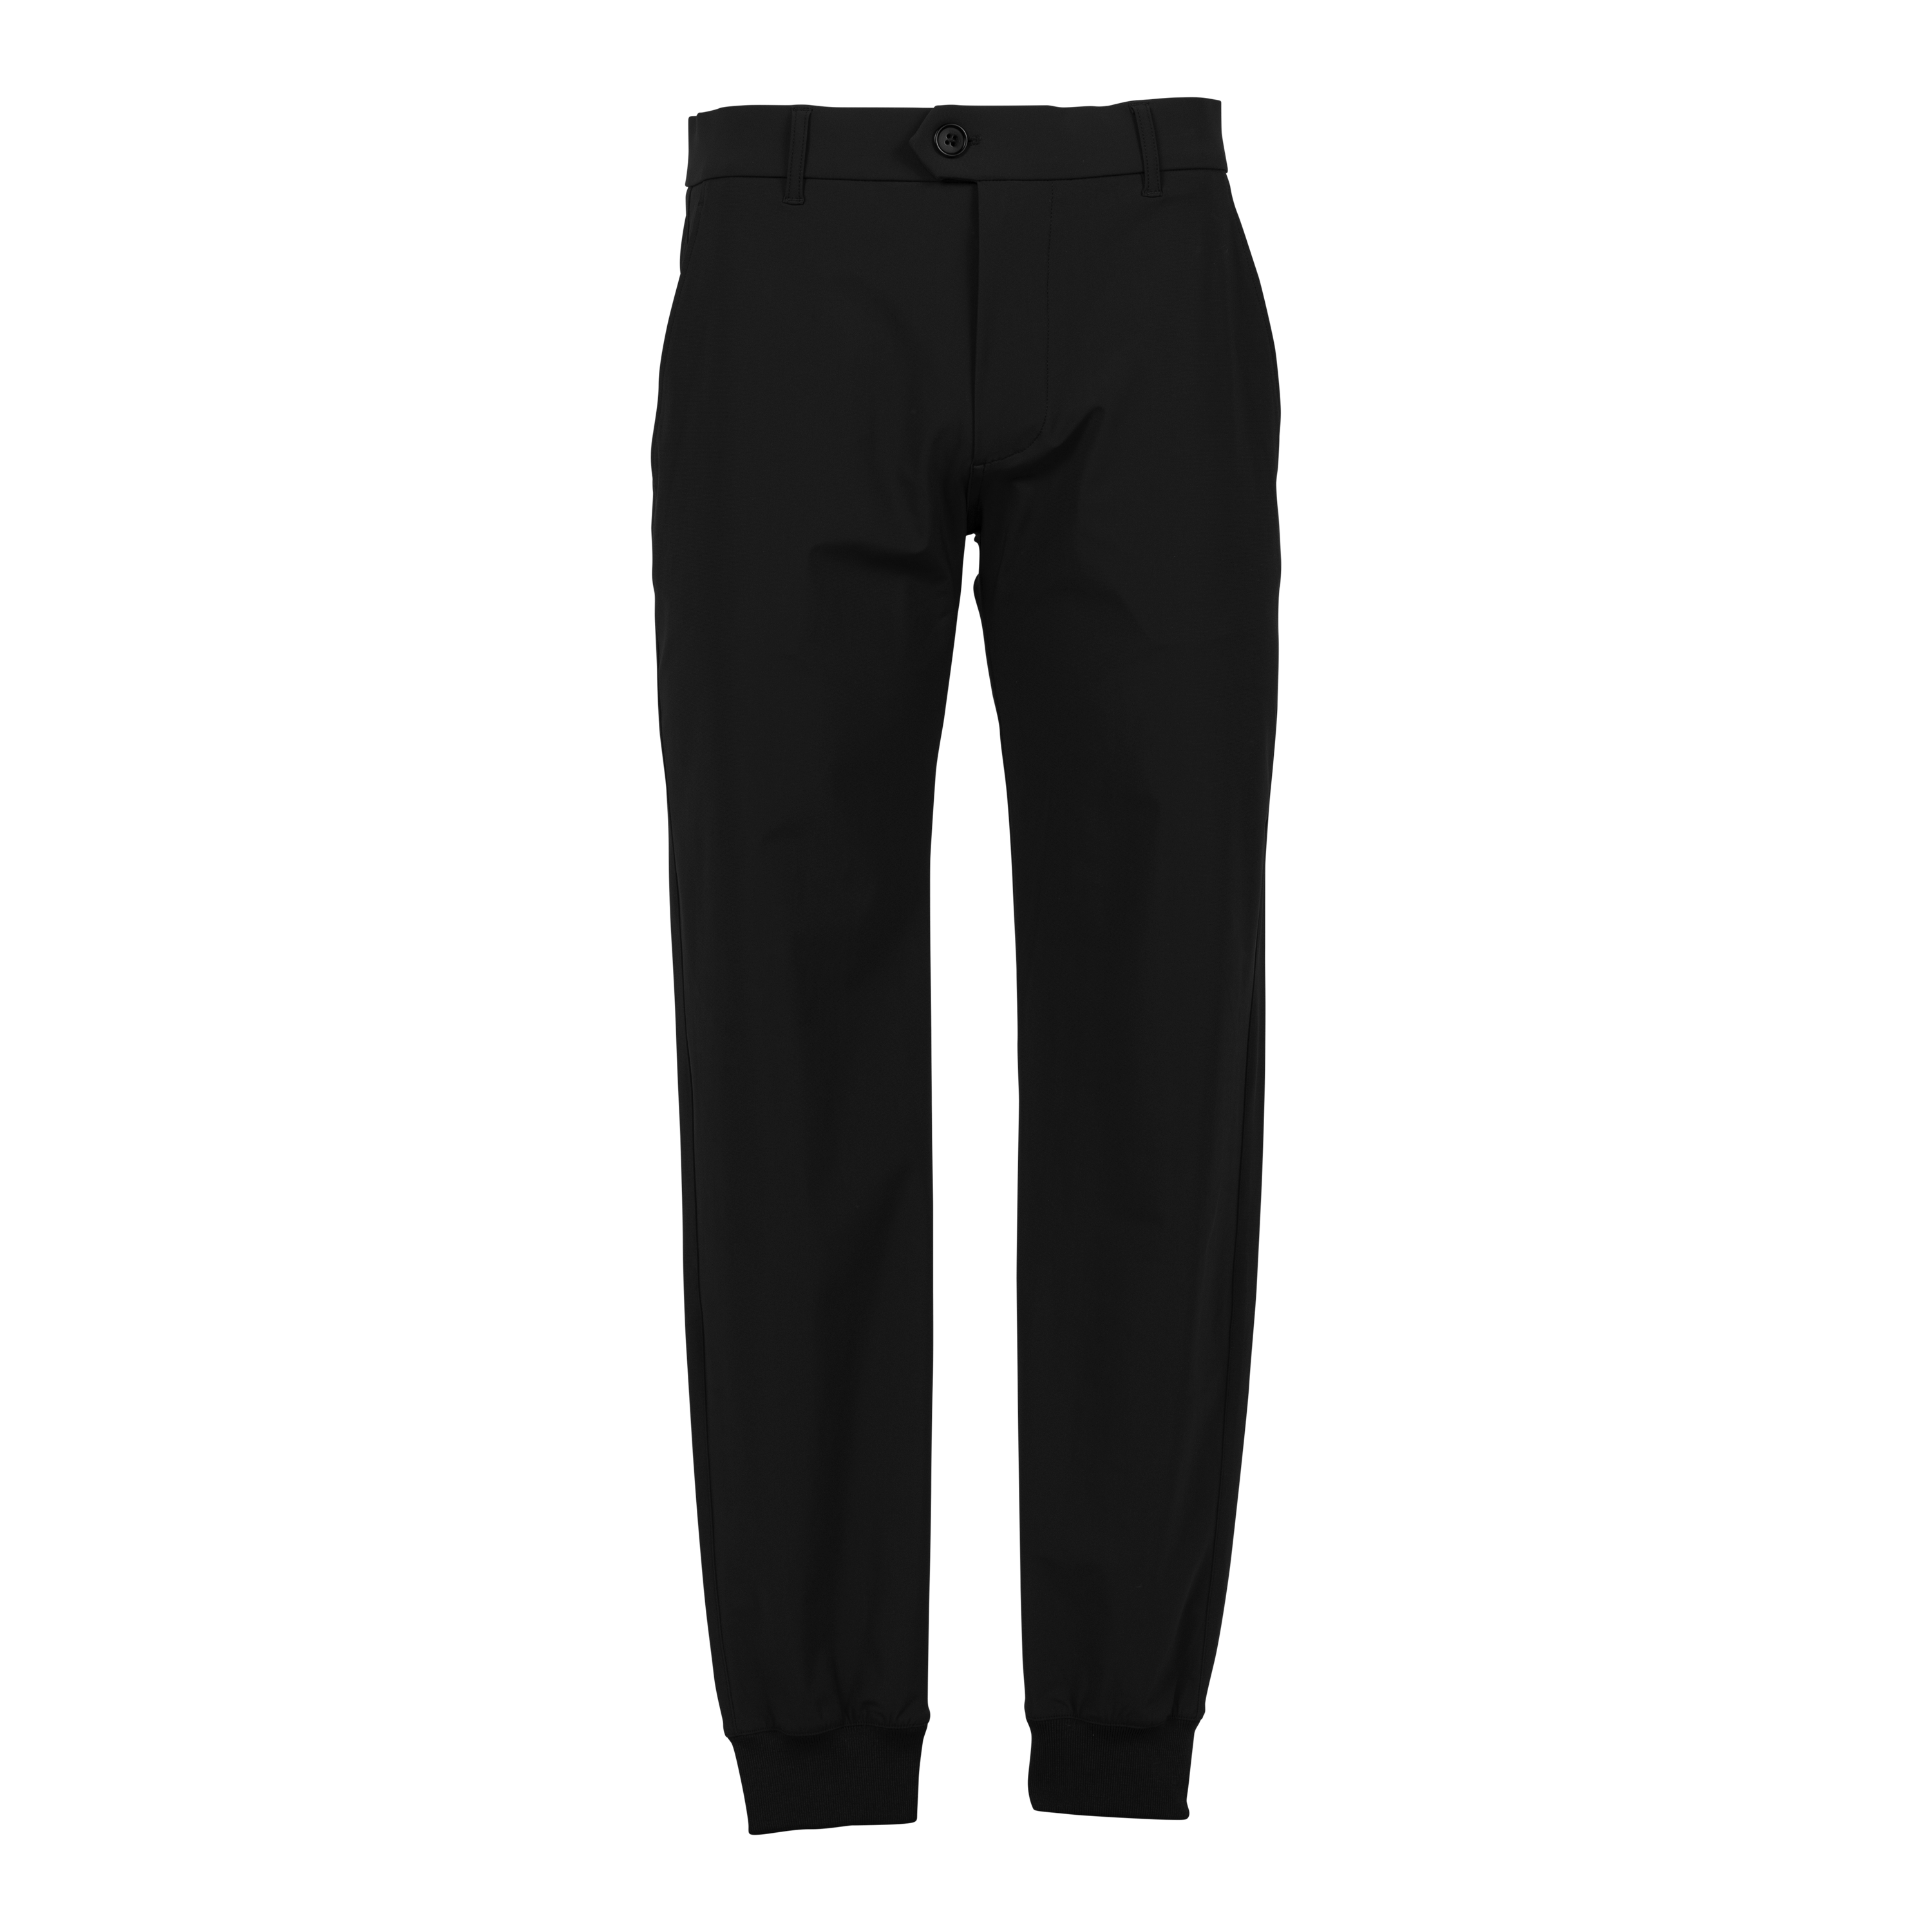 KROST X FILA Limited Edition Men's Track Pants Straight Sweatpants $160 NEW  XL | eBay